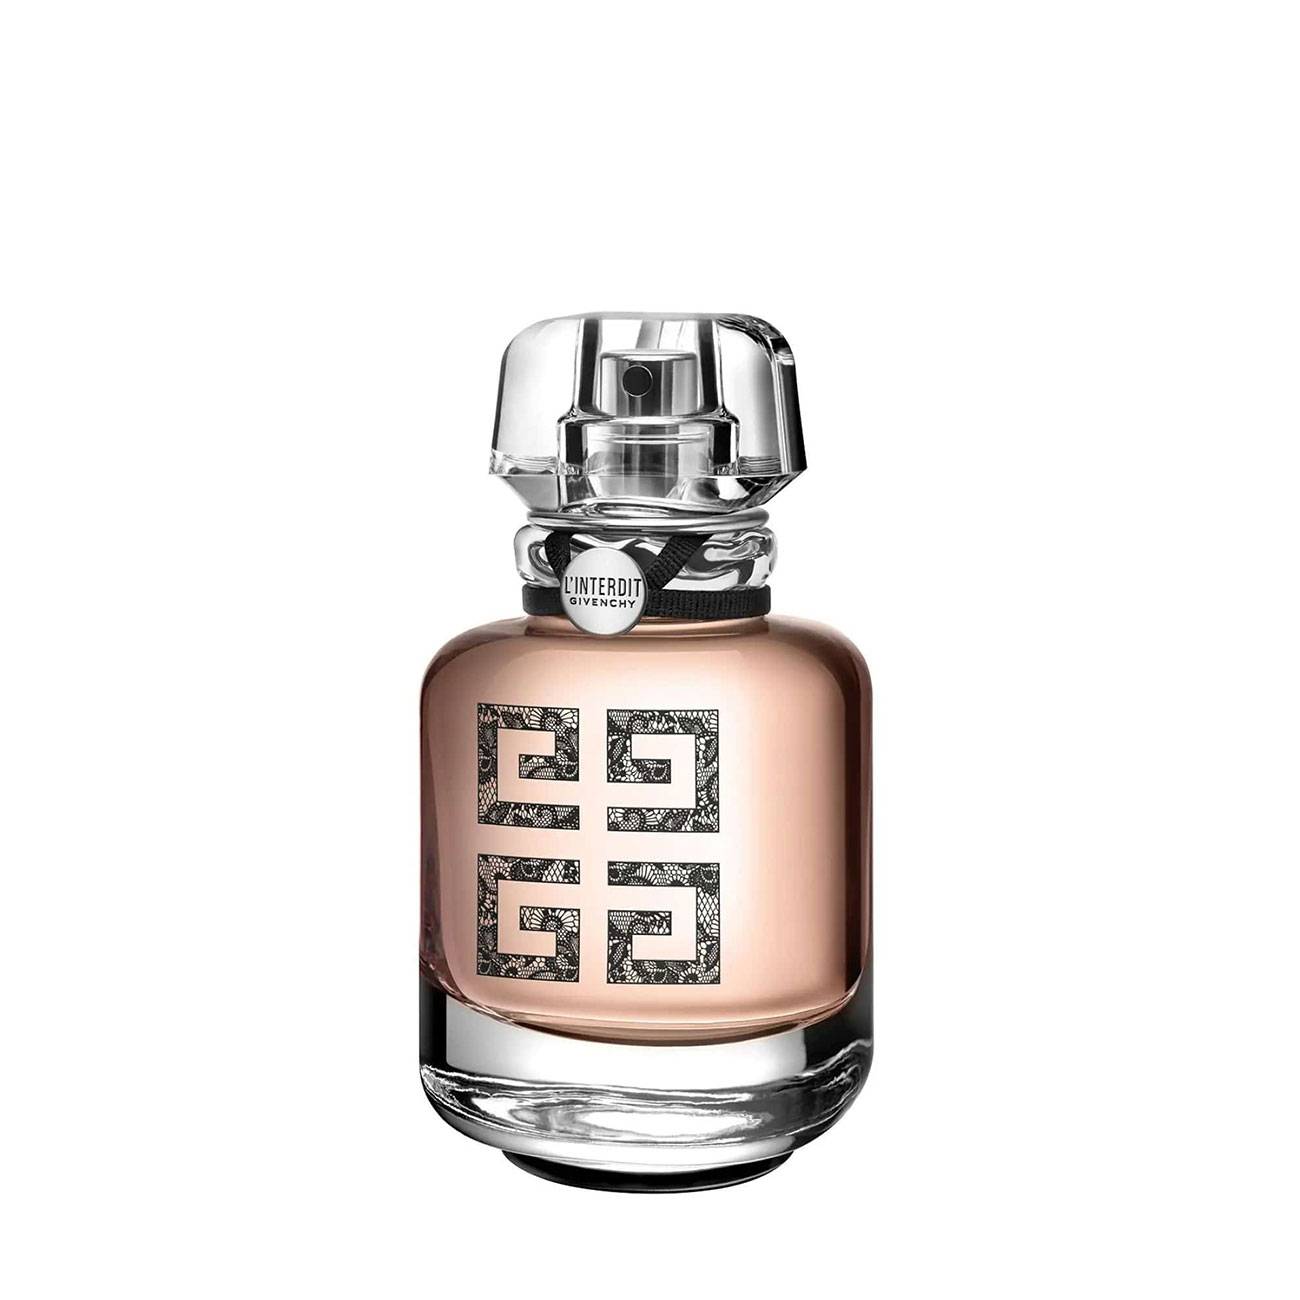 Apa de Parfum Givenchy L'INTERDIT COUTURE EDITION 50ml cu comanda online